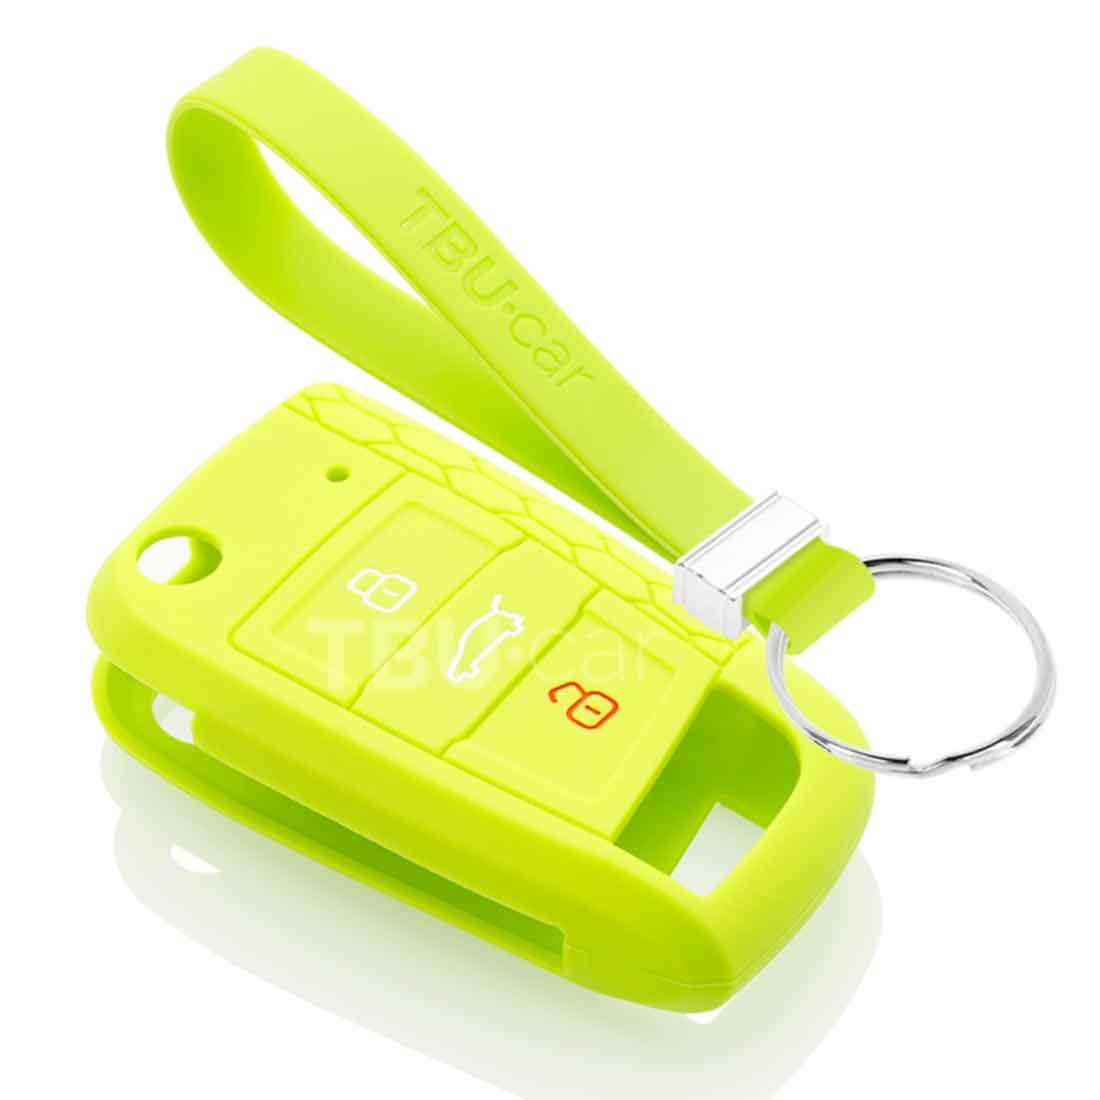 TBU car TBU car Sleutel cover compatibel met VW - Silicone sleutelhoesje - beschermhoesje autosleutel - Lime groen